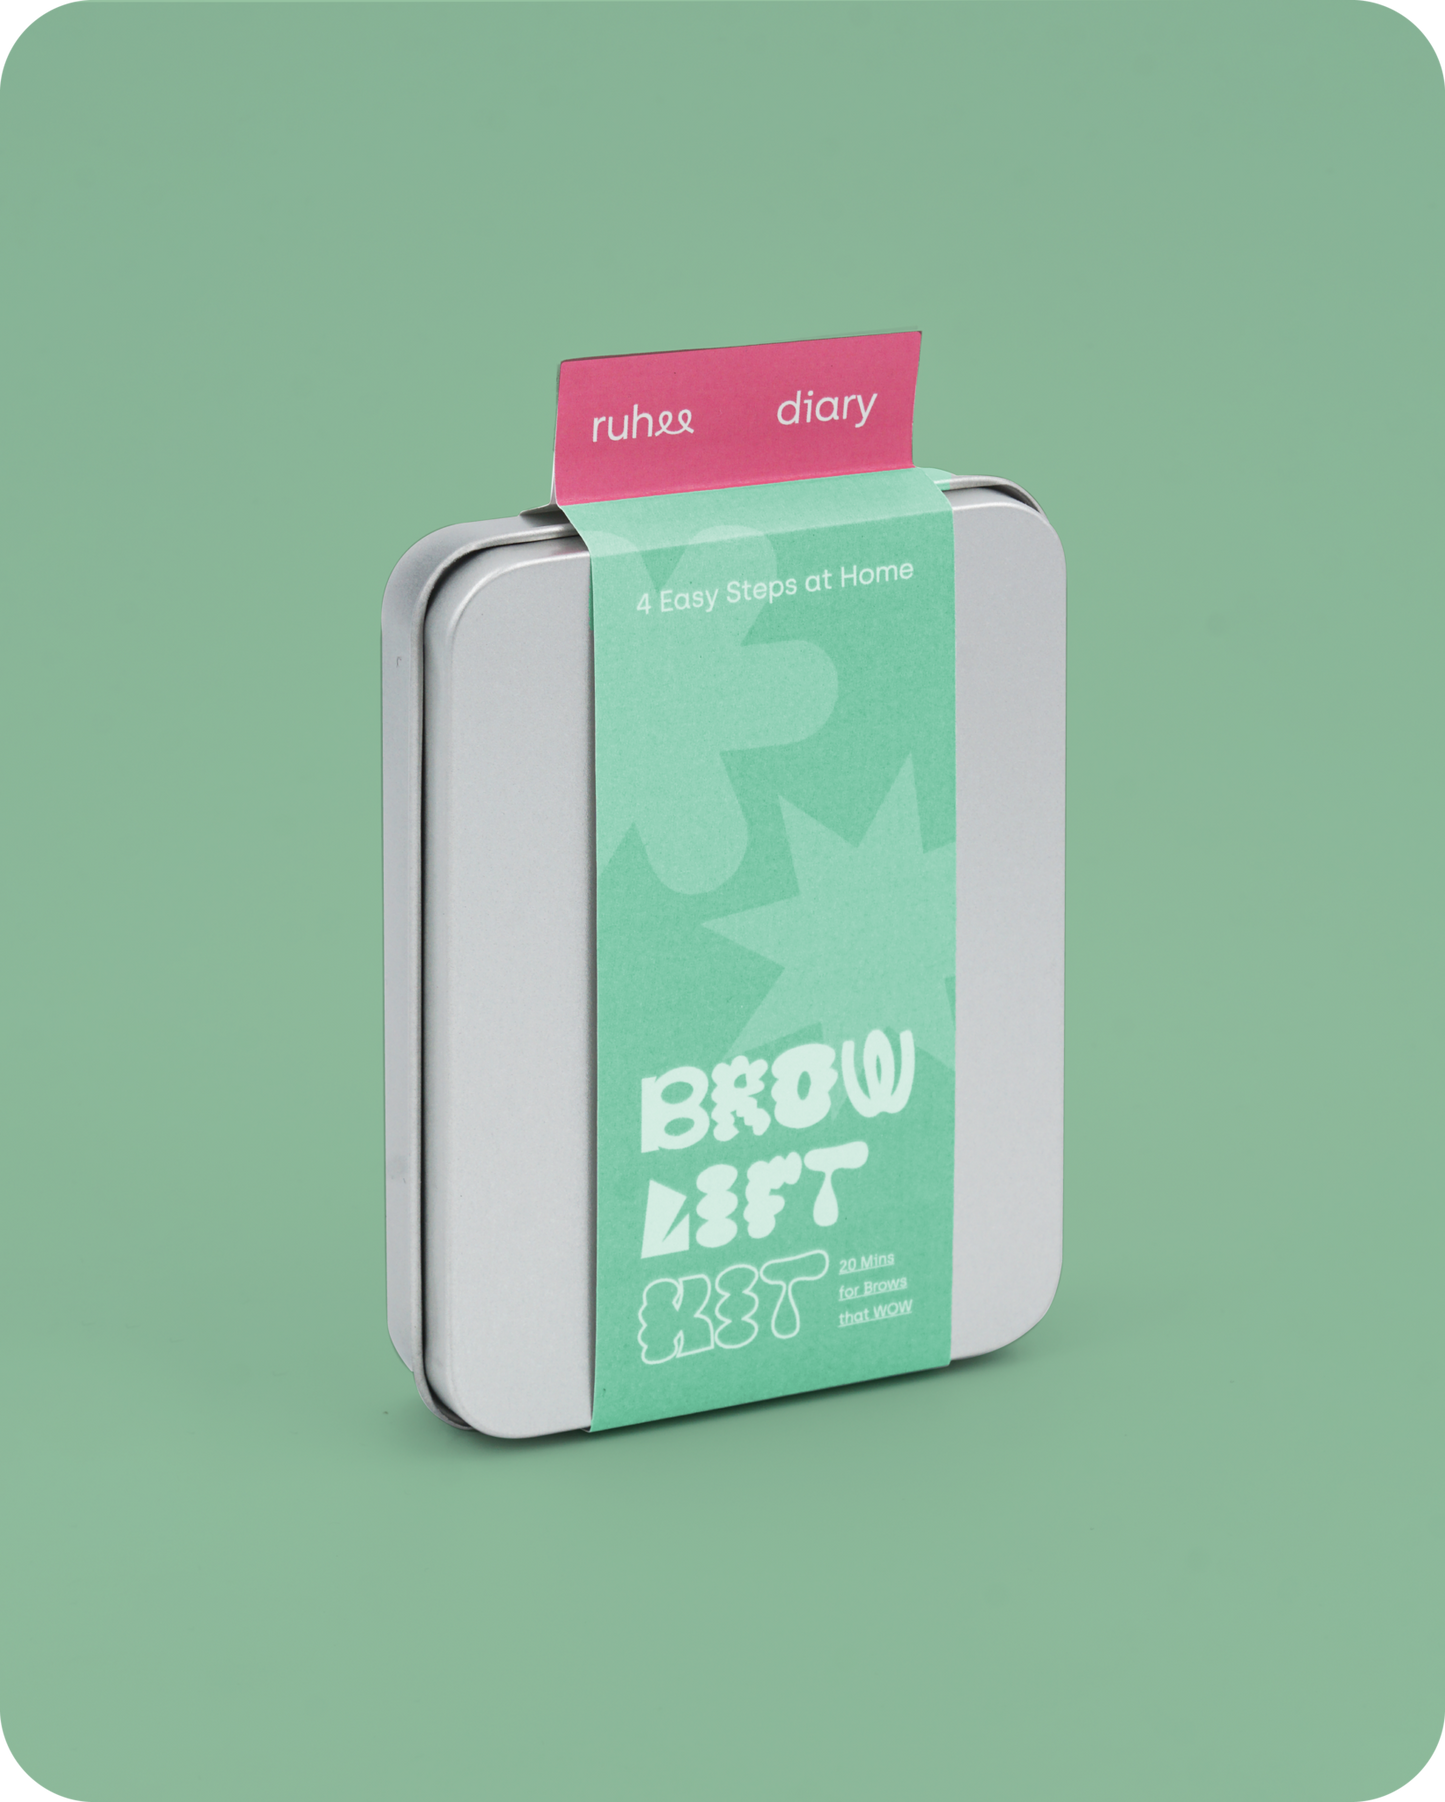 Brow Lift Kit